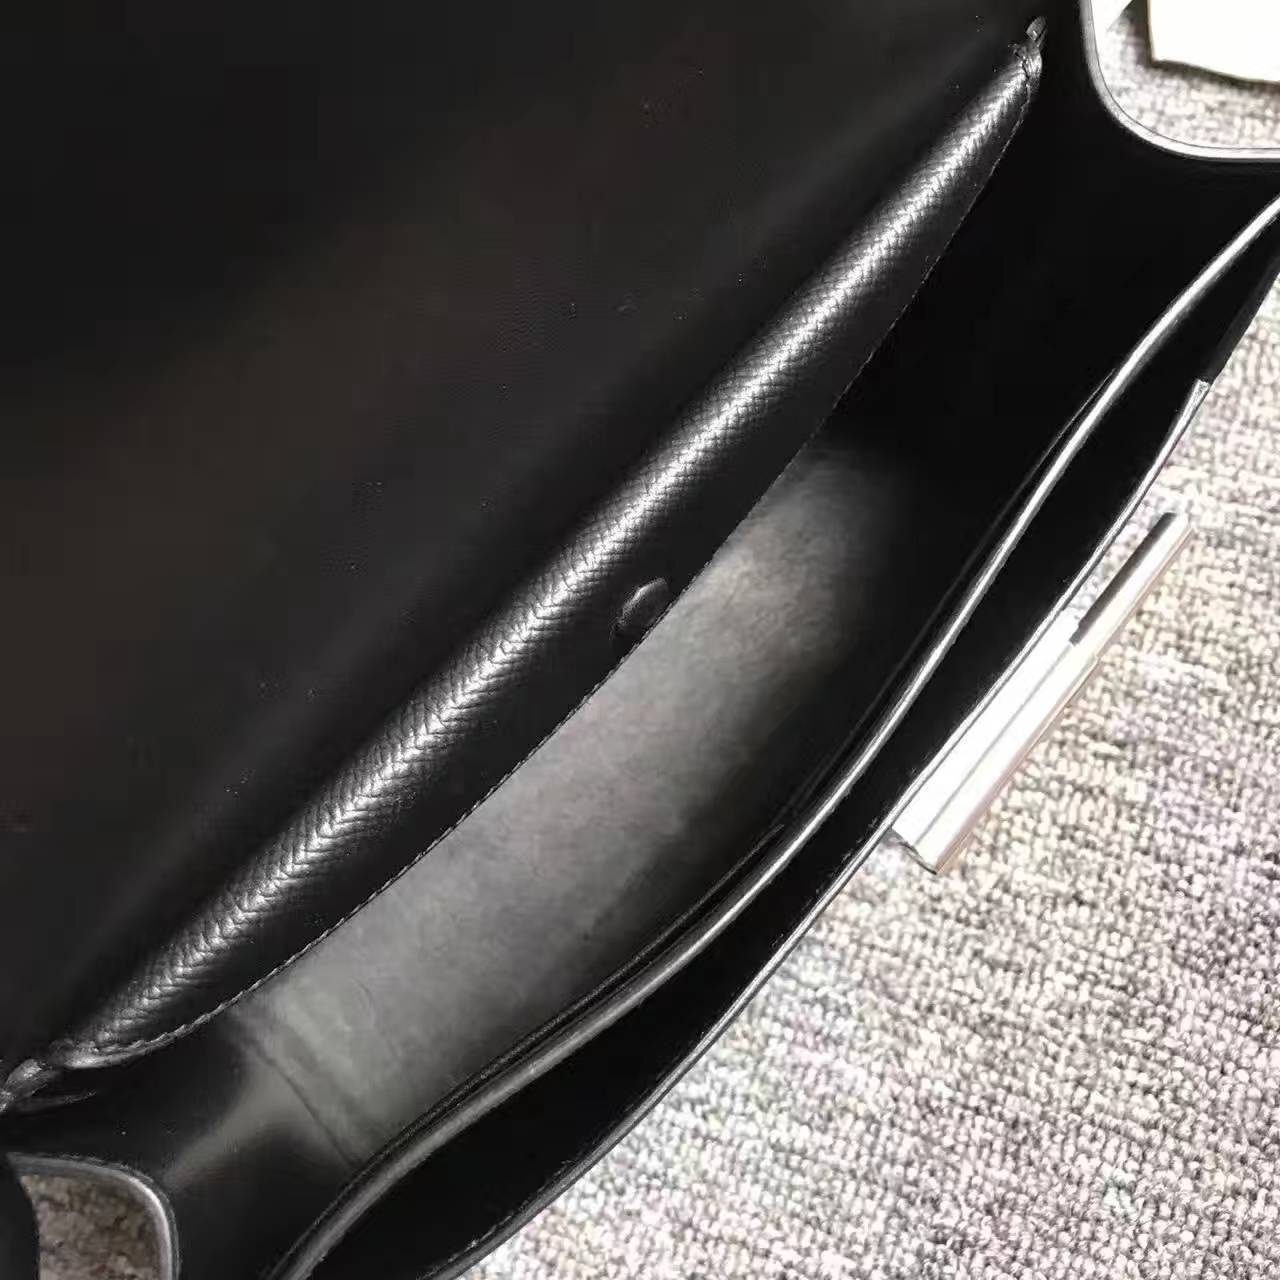 New Arrival Hermes Verrou Bag 24cm in CK89 Black Epsom Leather